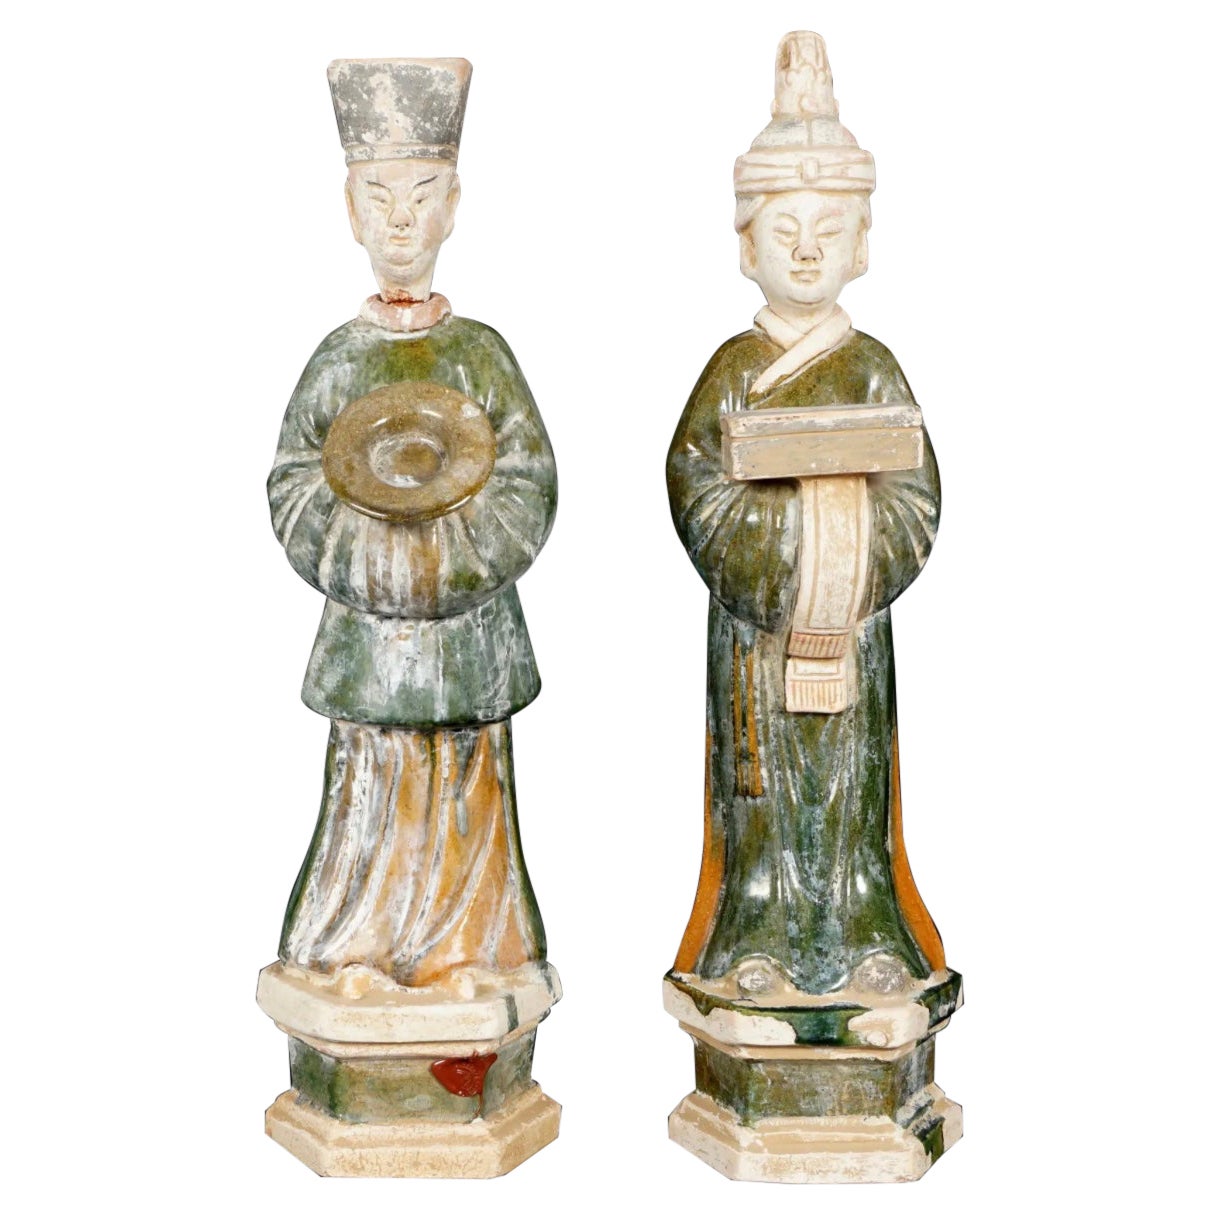 Deux dignitaries de poterie chinoises de style Ming